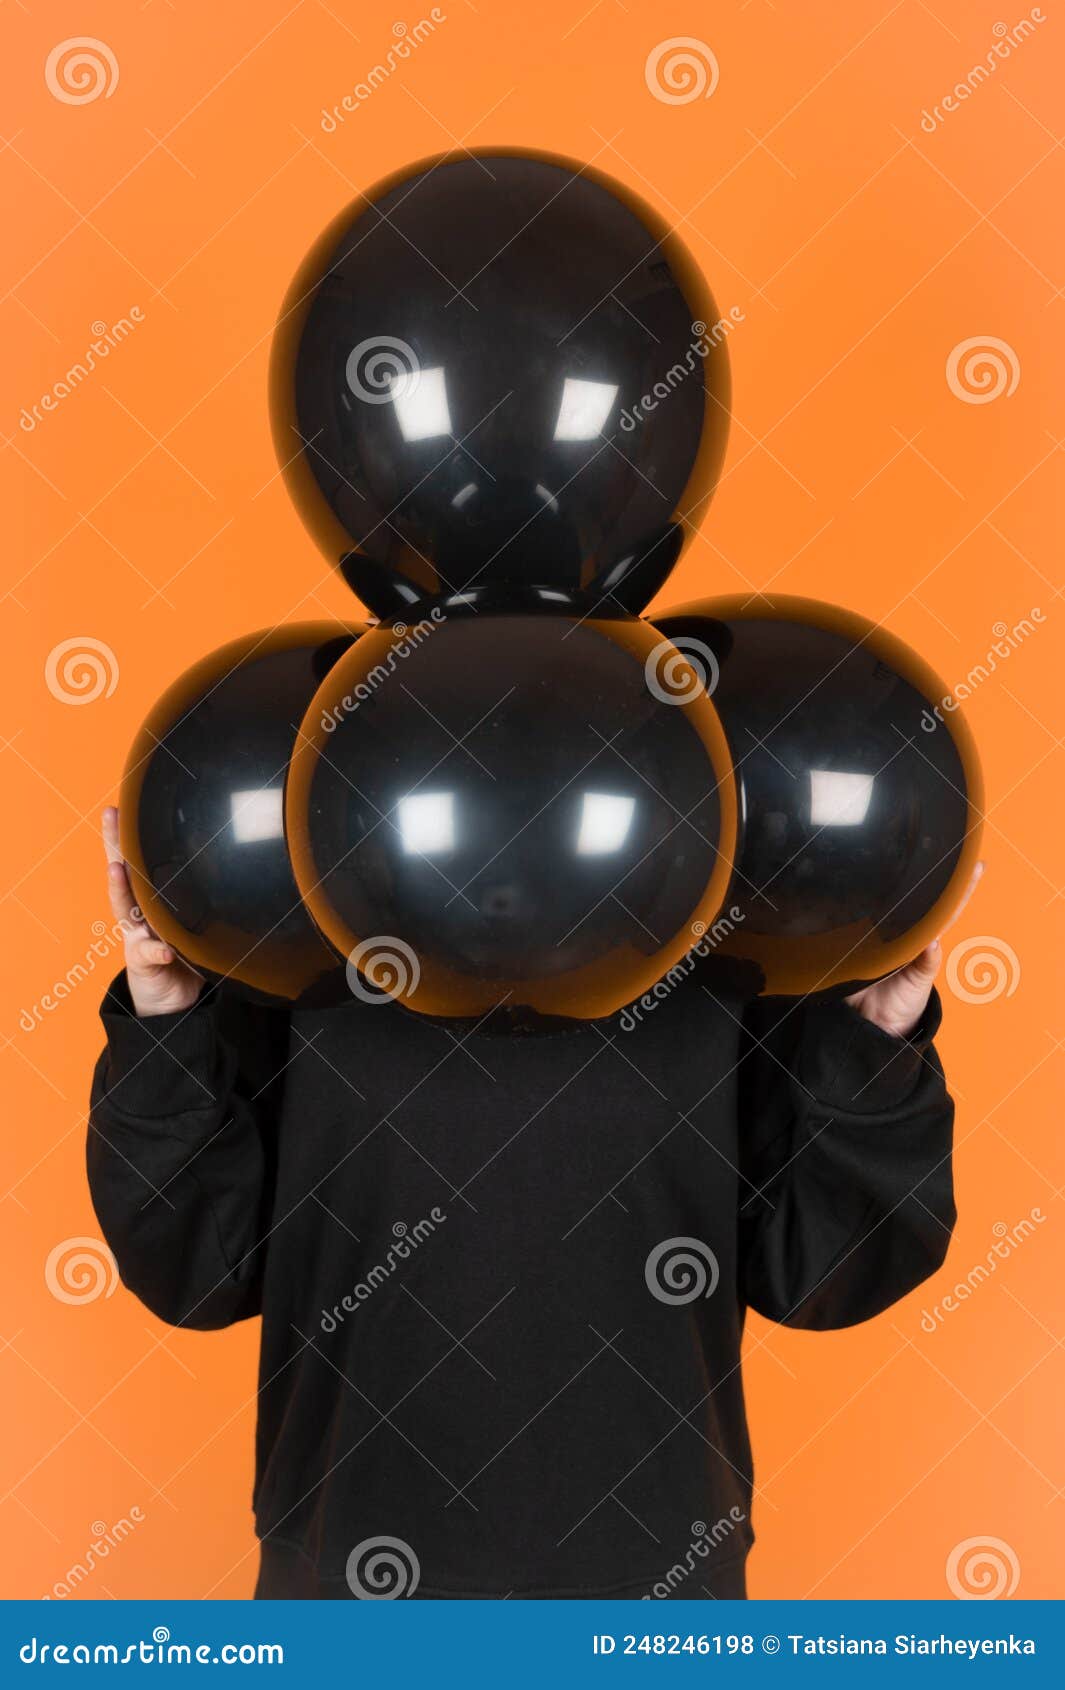 Un Ballon Noir Et Or Avec Des Ballons Noirs Et Or Dans Les Airs